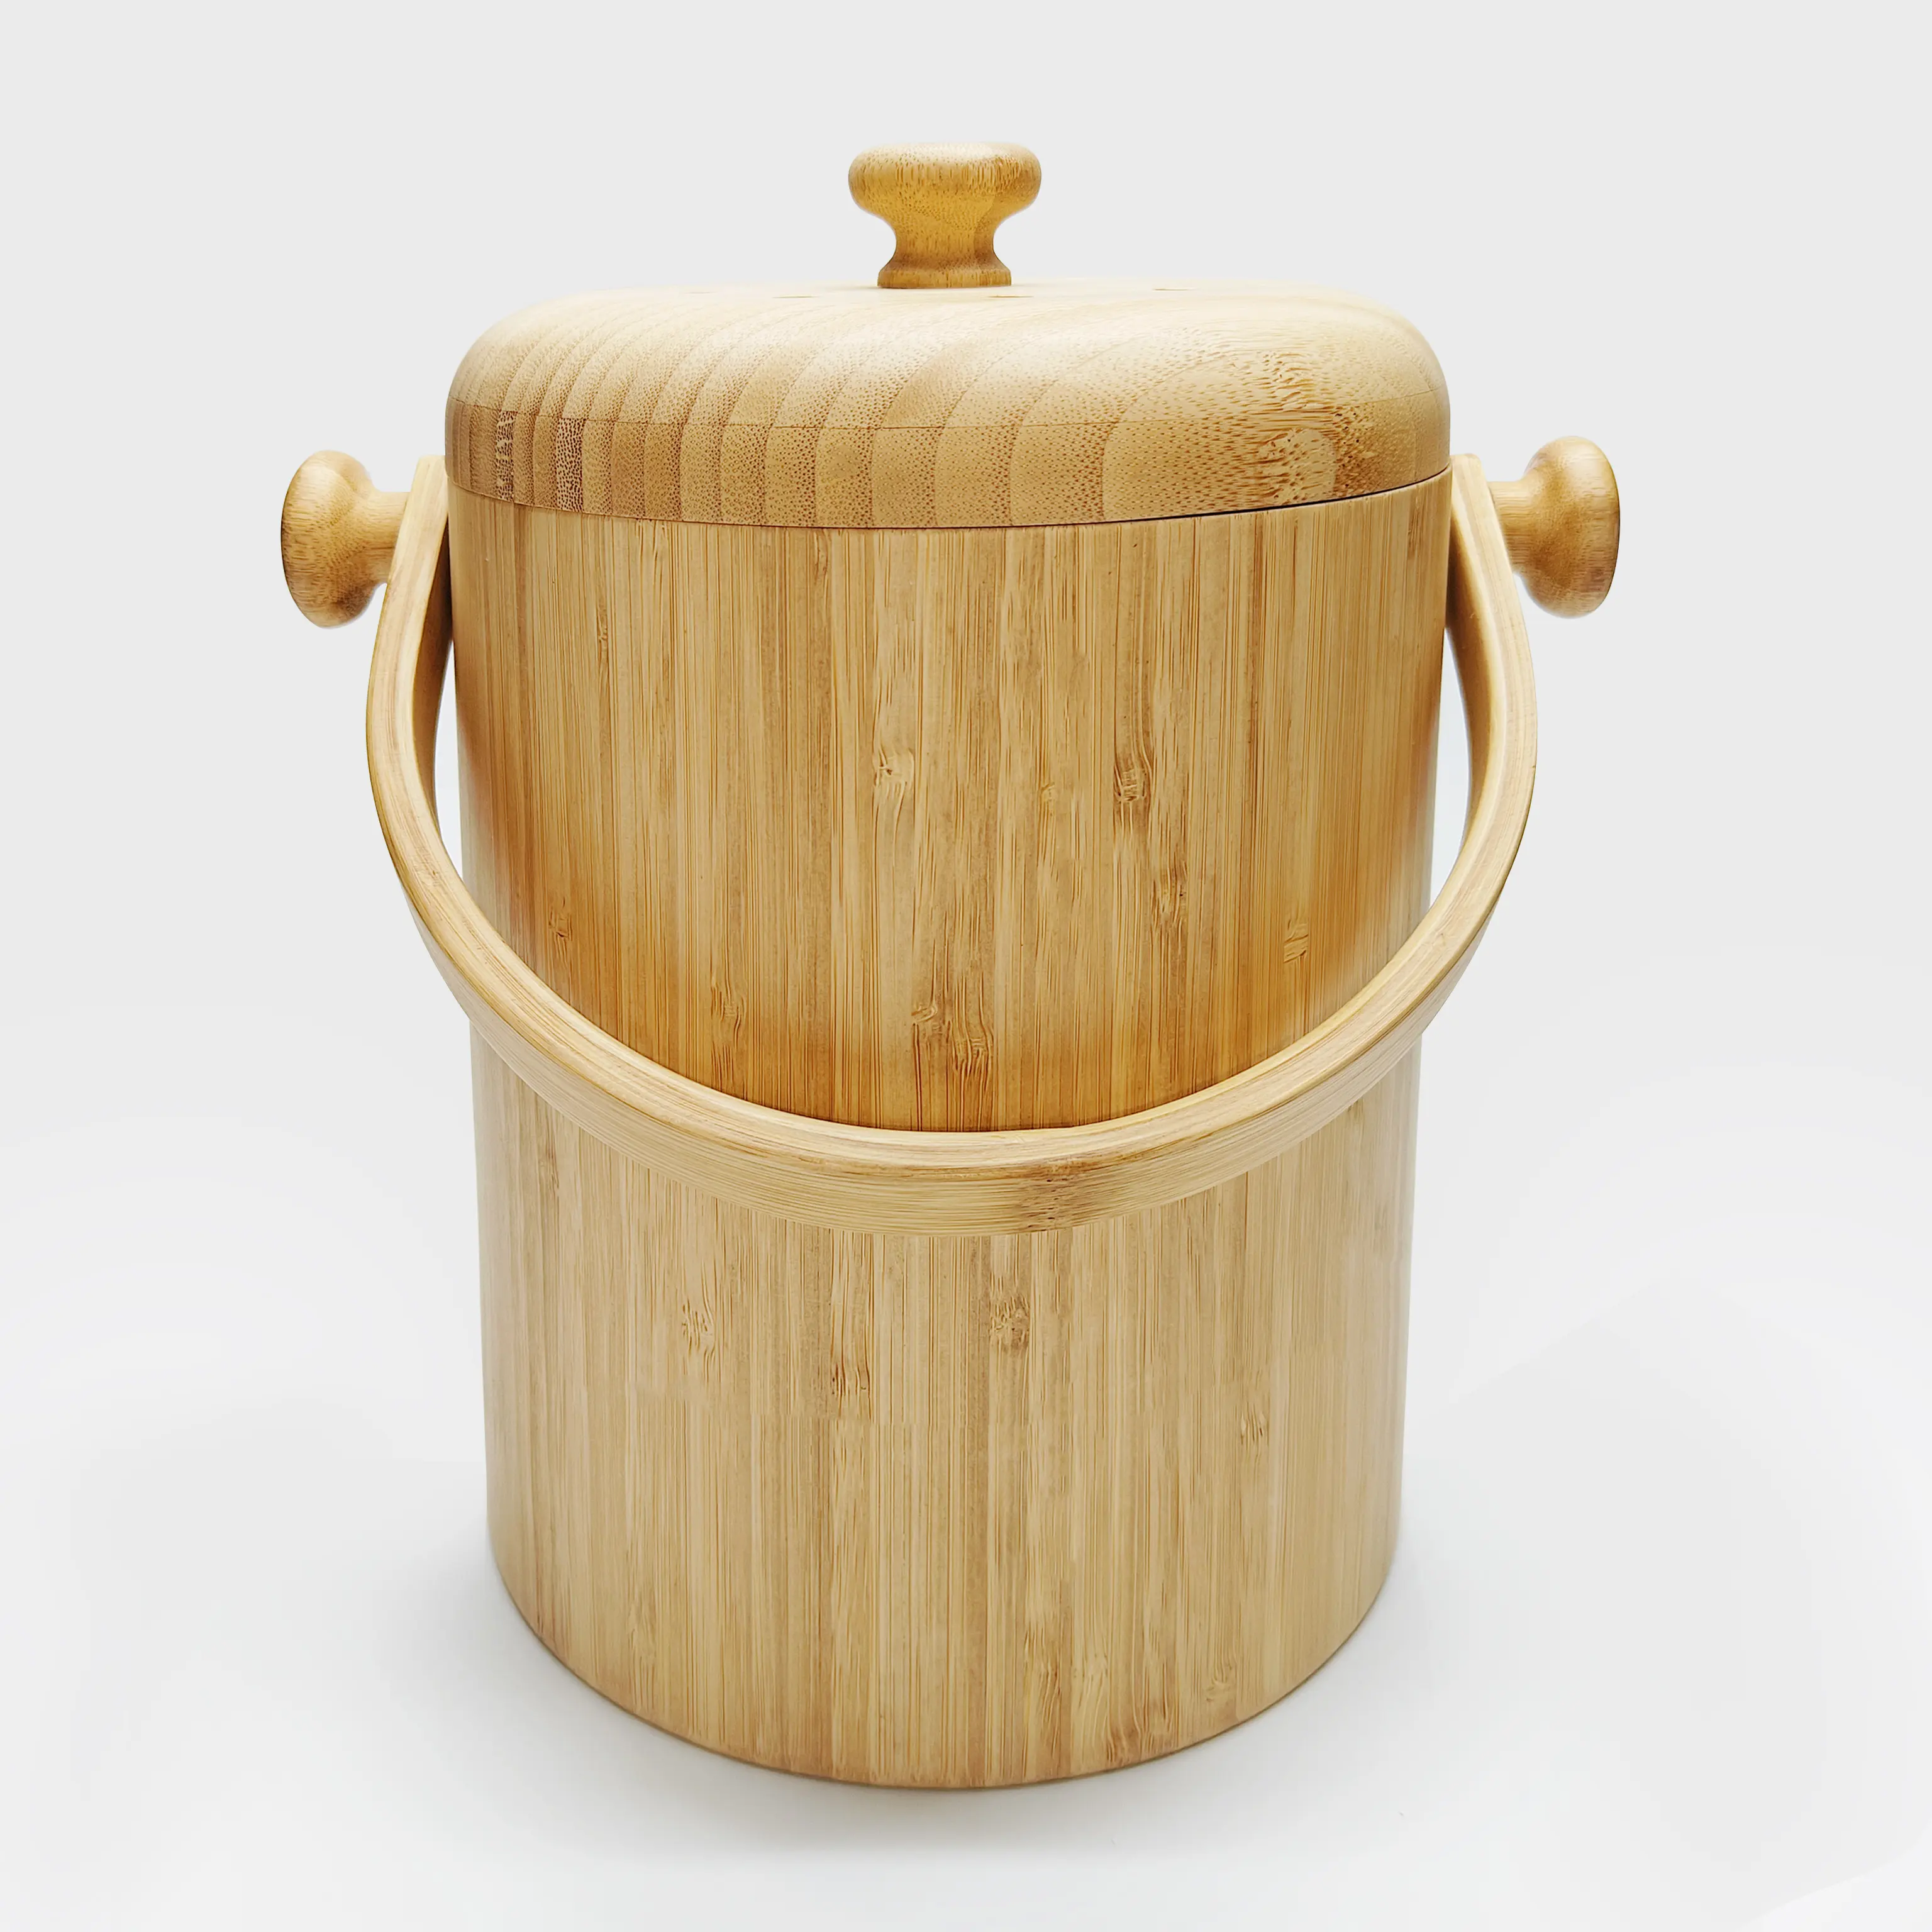 Оптовая продажа, бамбуковое ведро для риса, ведро для хранения риса, Маленькая деревянная бочка с крышкой